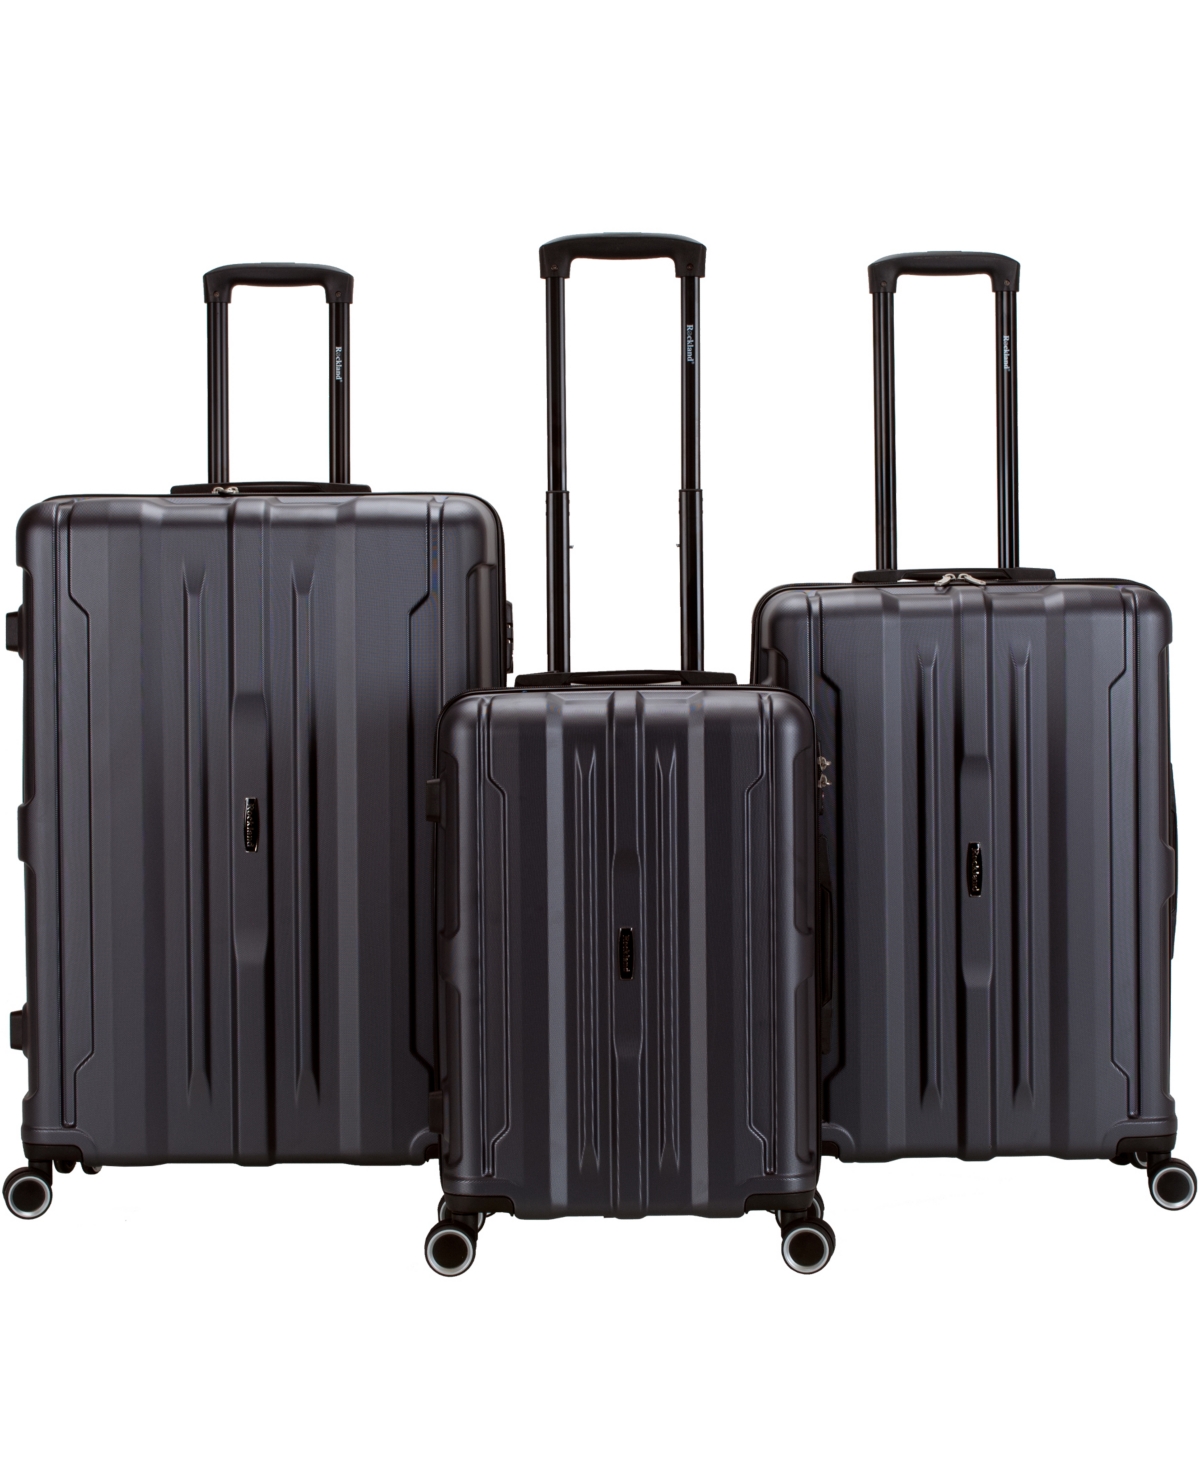 Seattle 3pc Hardside Luggage Set - Grey